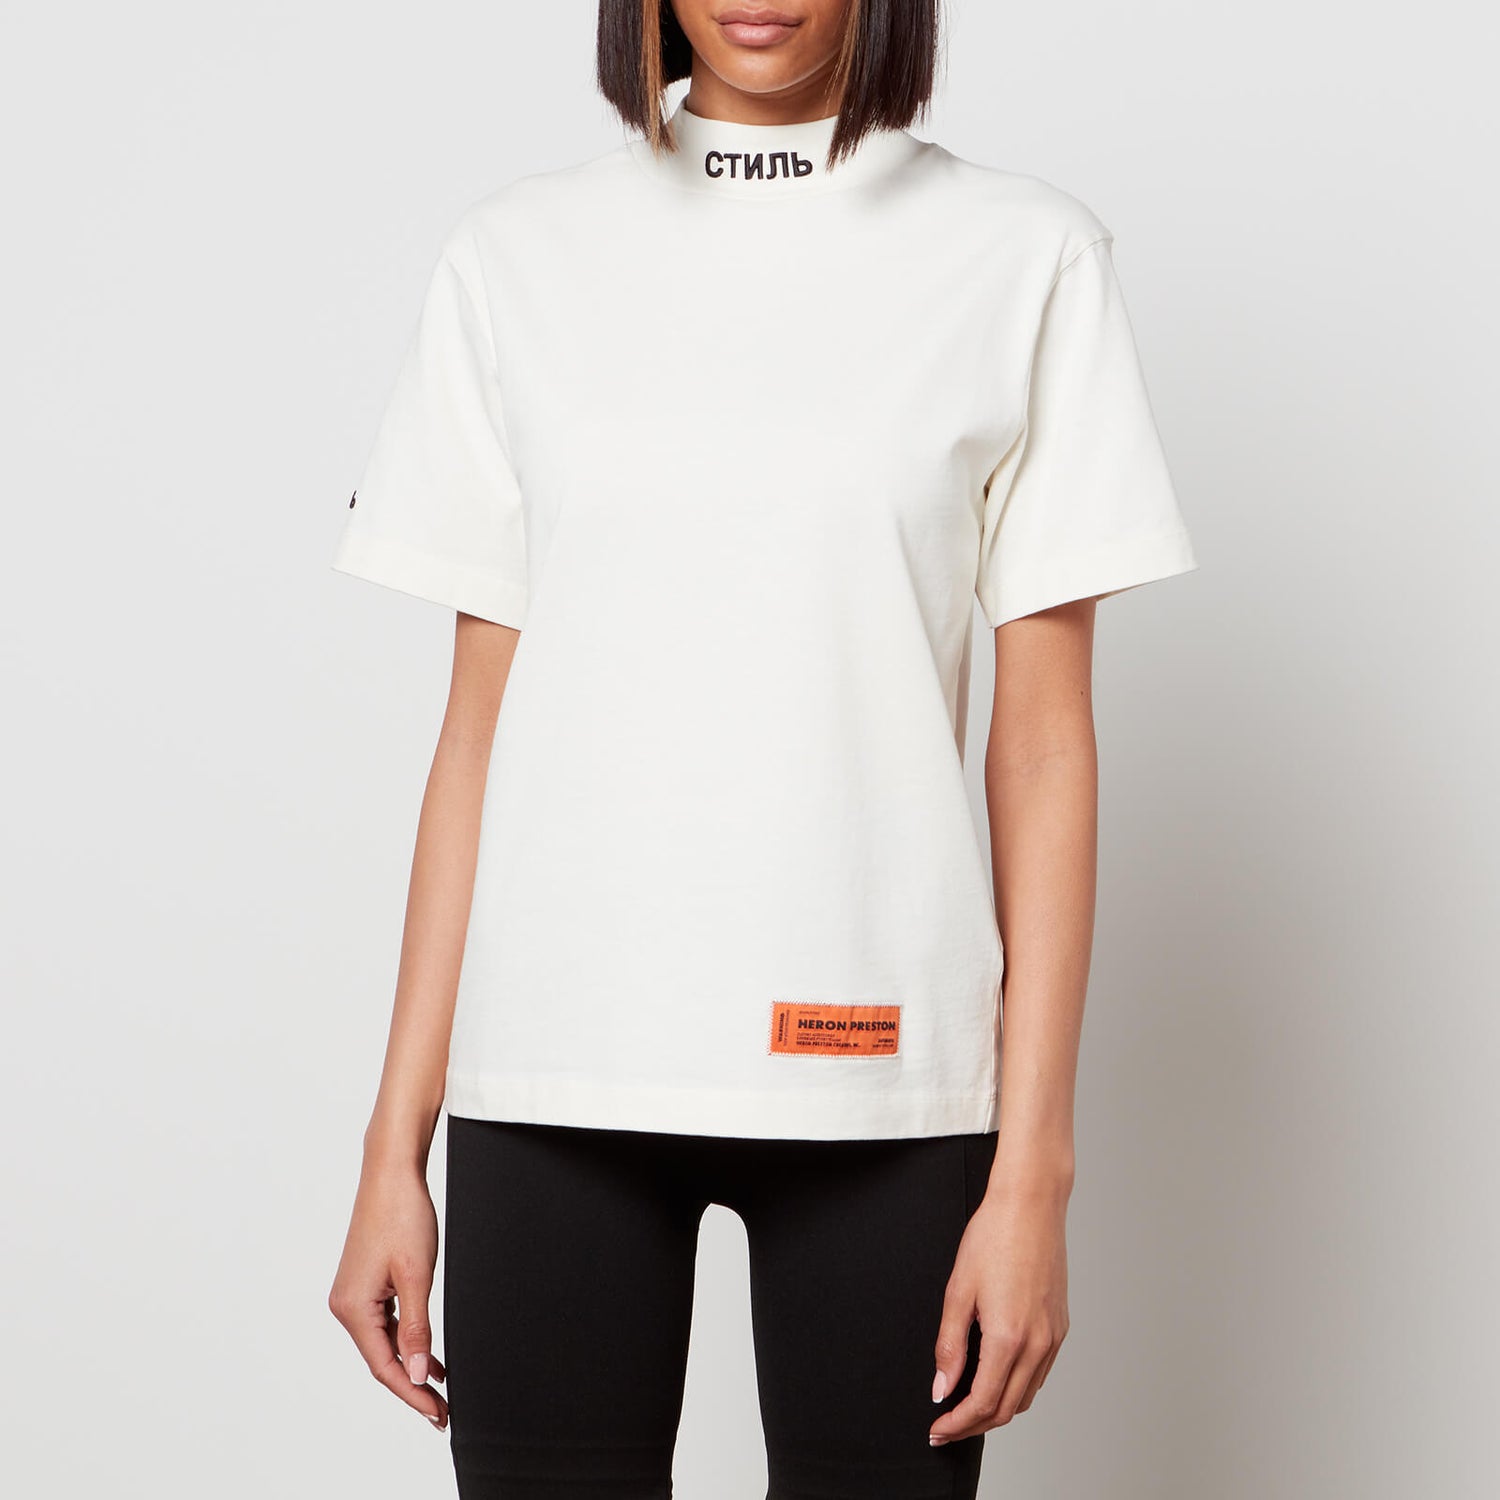 Heron Preston Women's Ctnmb Turtleneck T-Shirt - White - XS